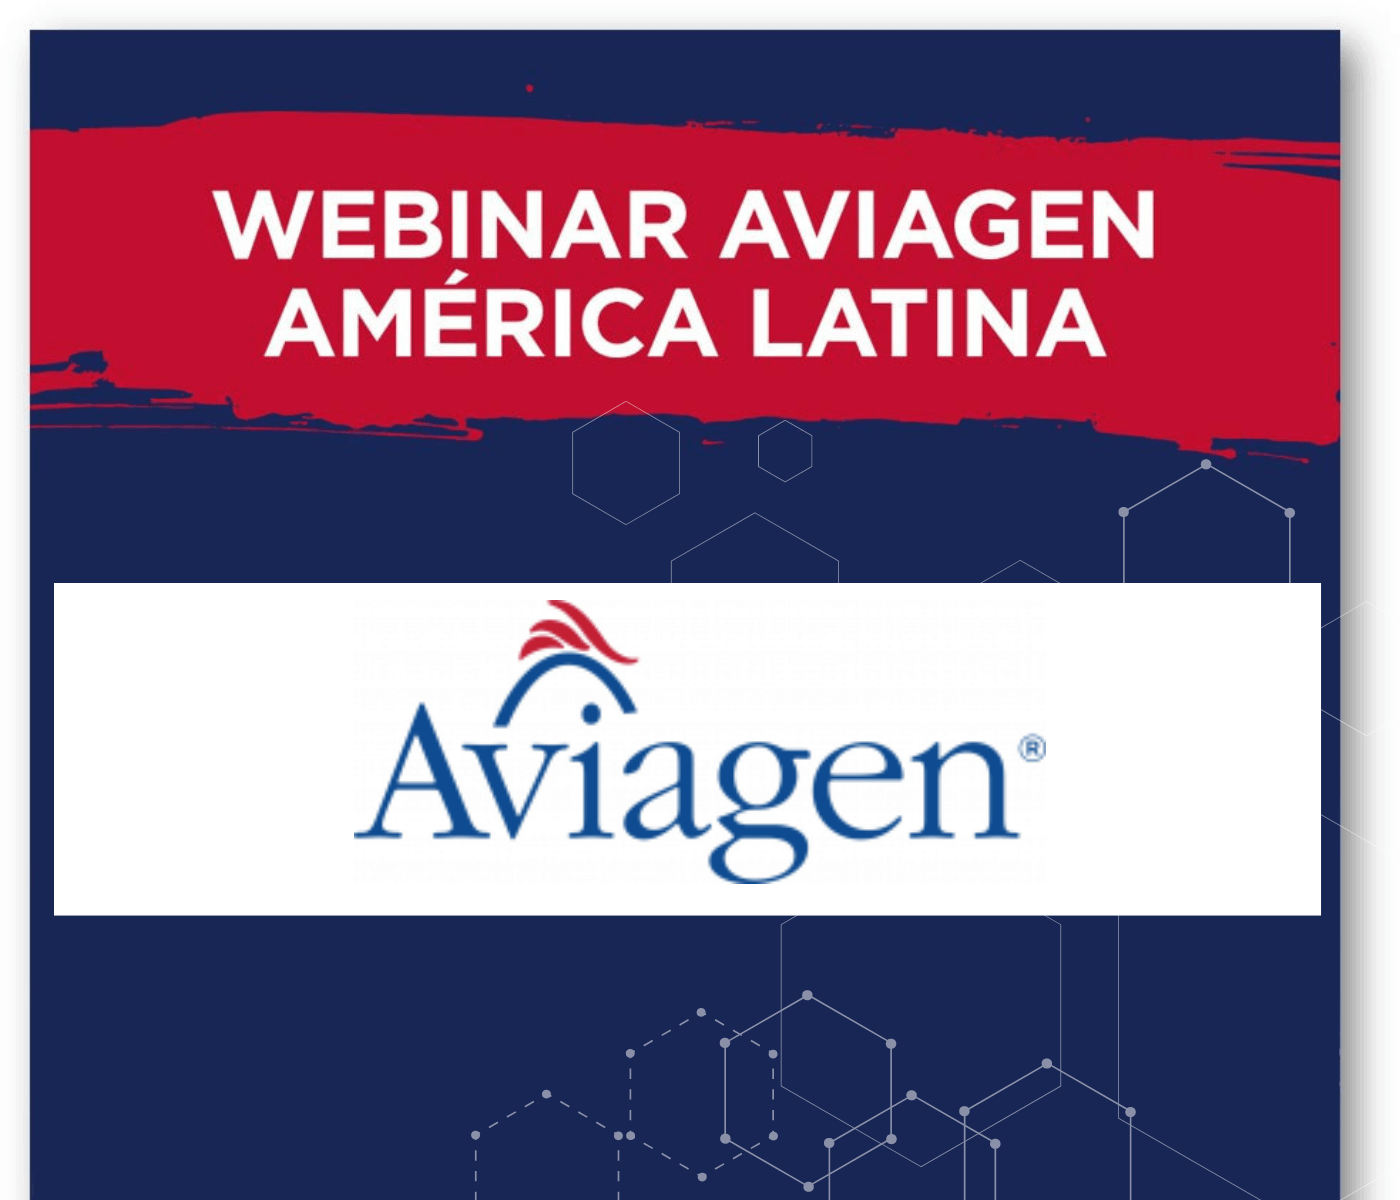 Nova série de webinars da Aviagen para América Latina reúne mais de 2,5 mil participantes